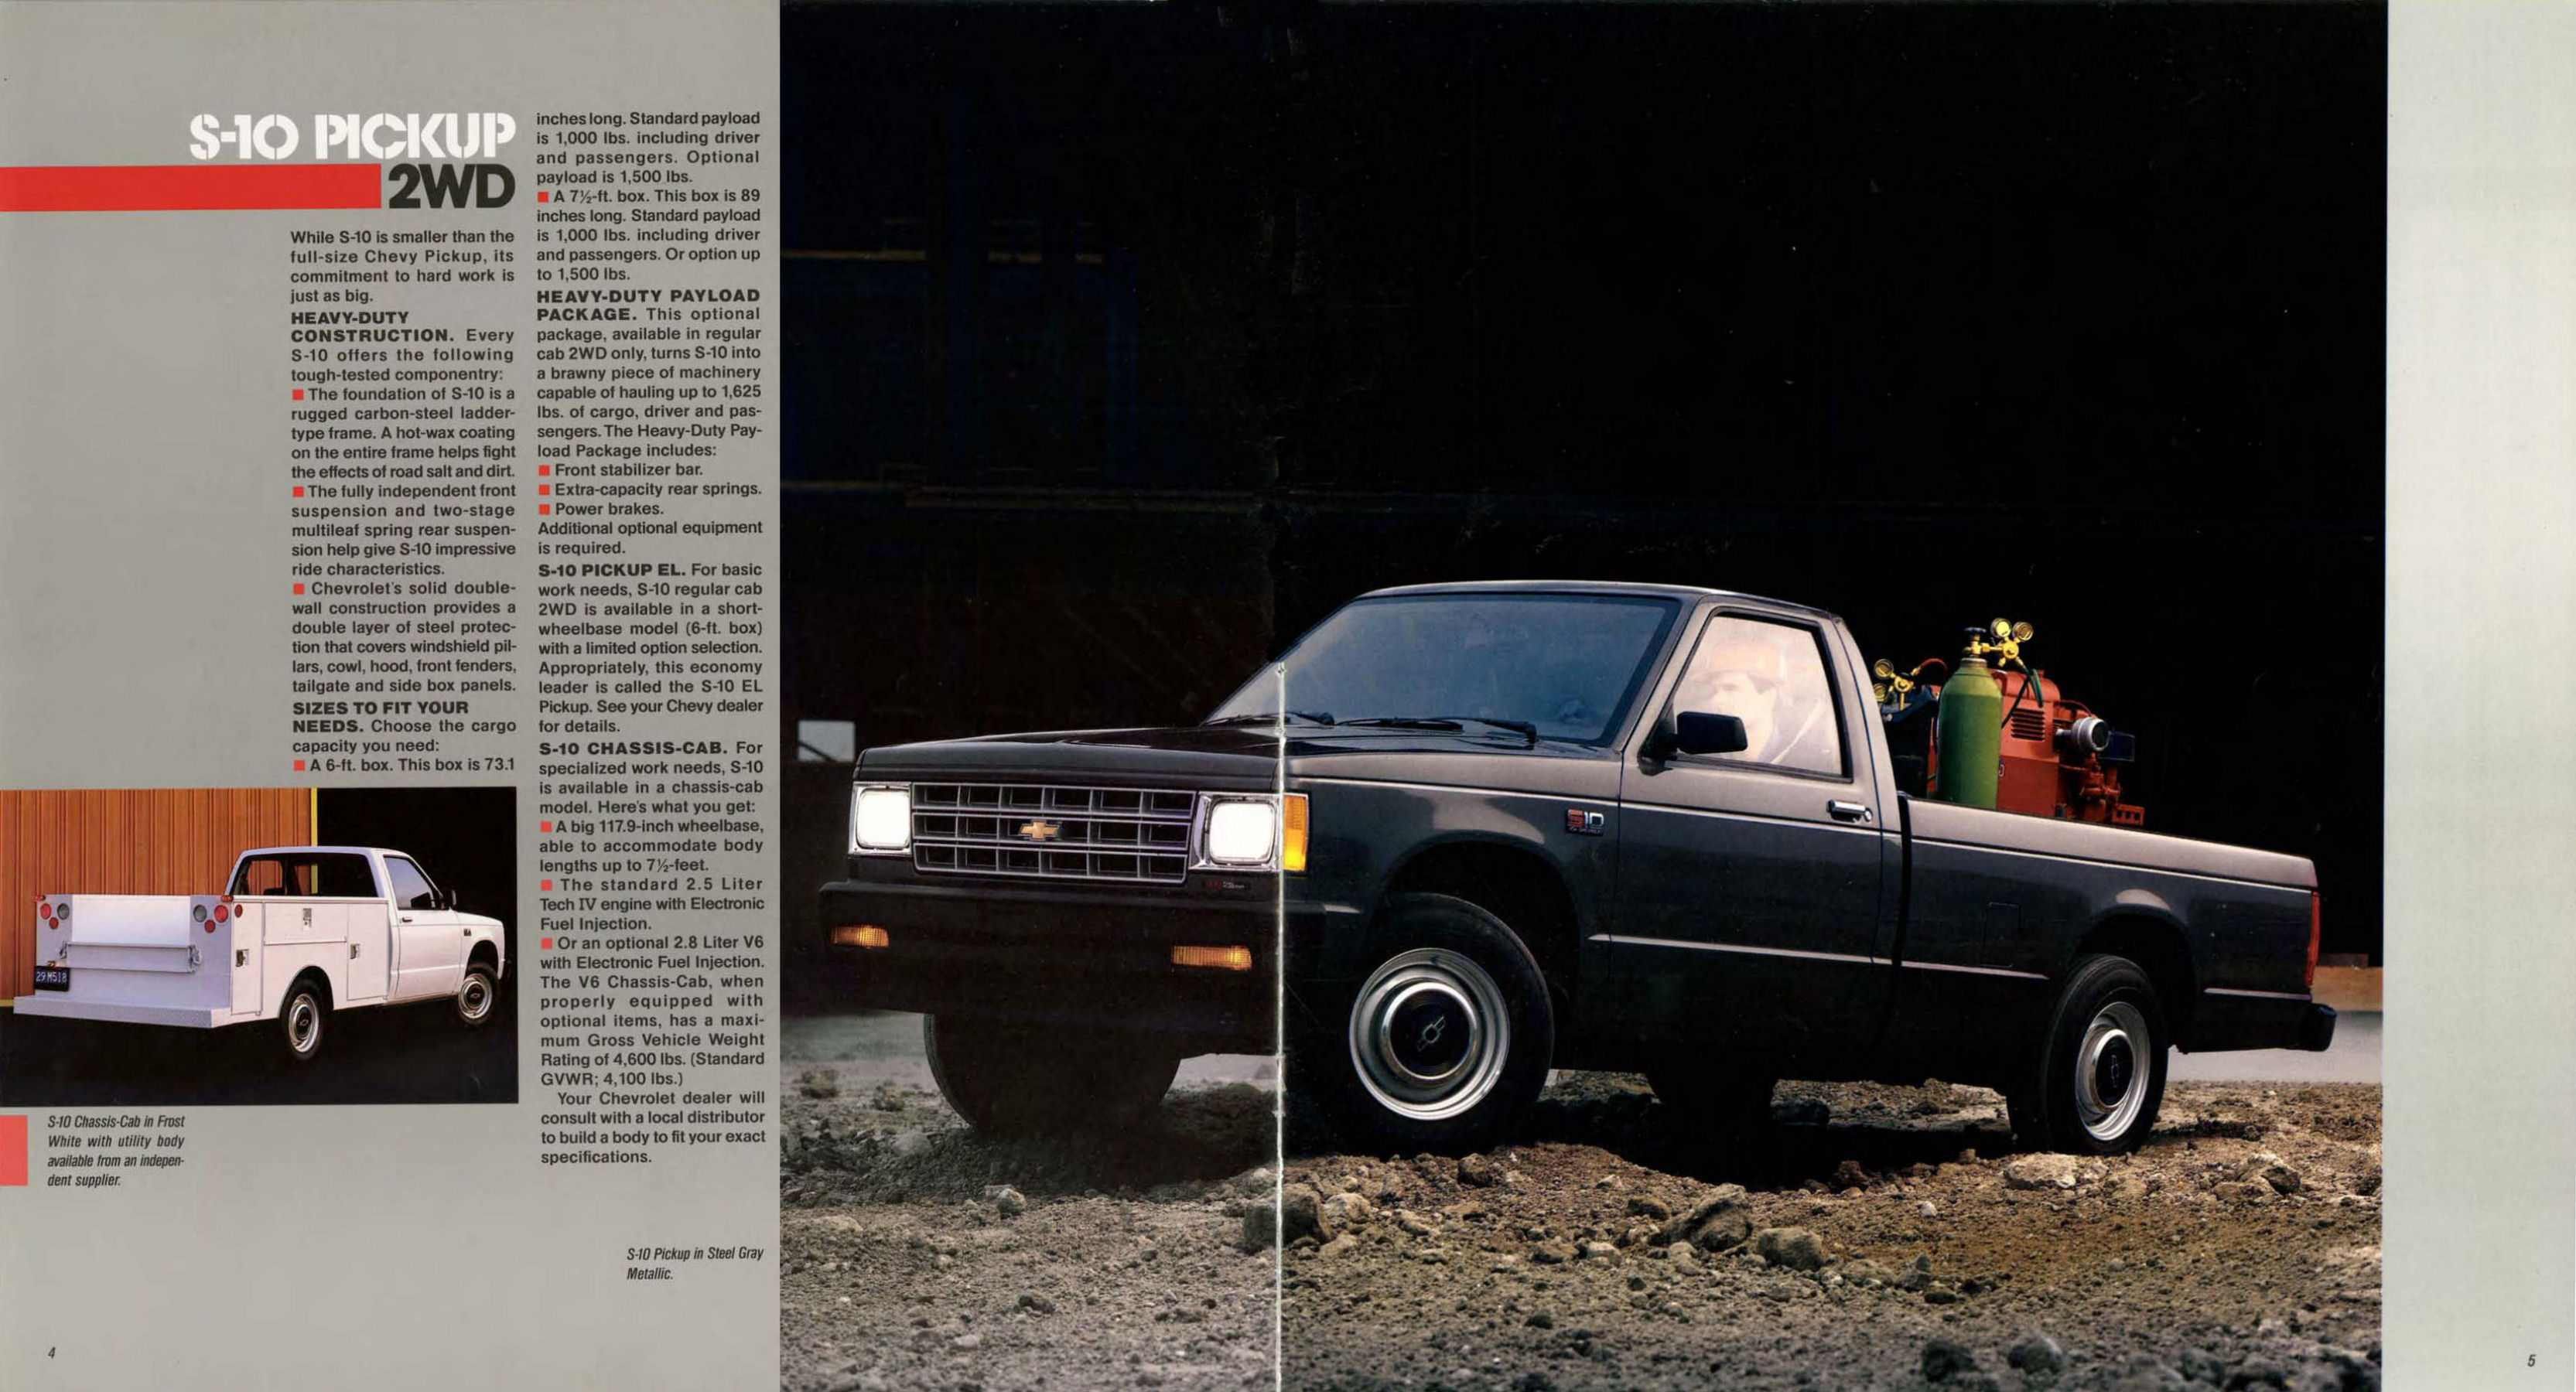 1987 Chevrolet S-10 Pickup-04-05